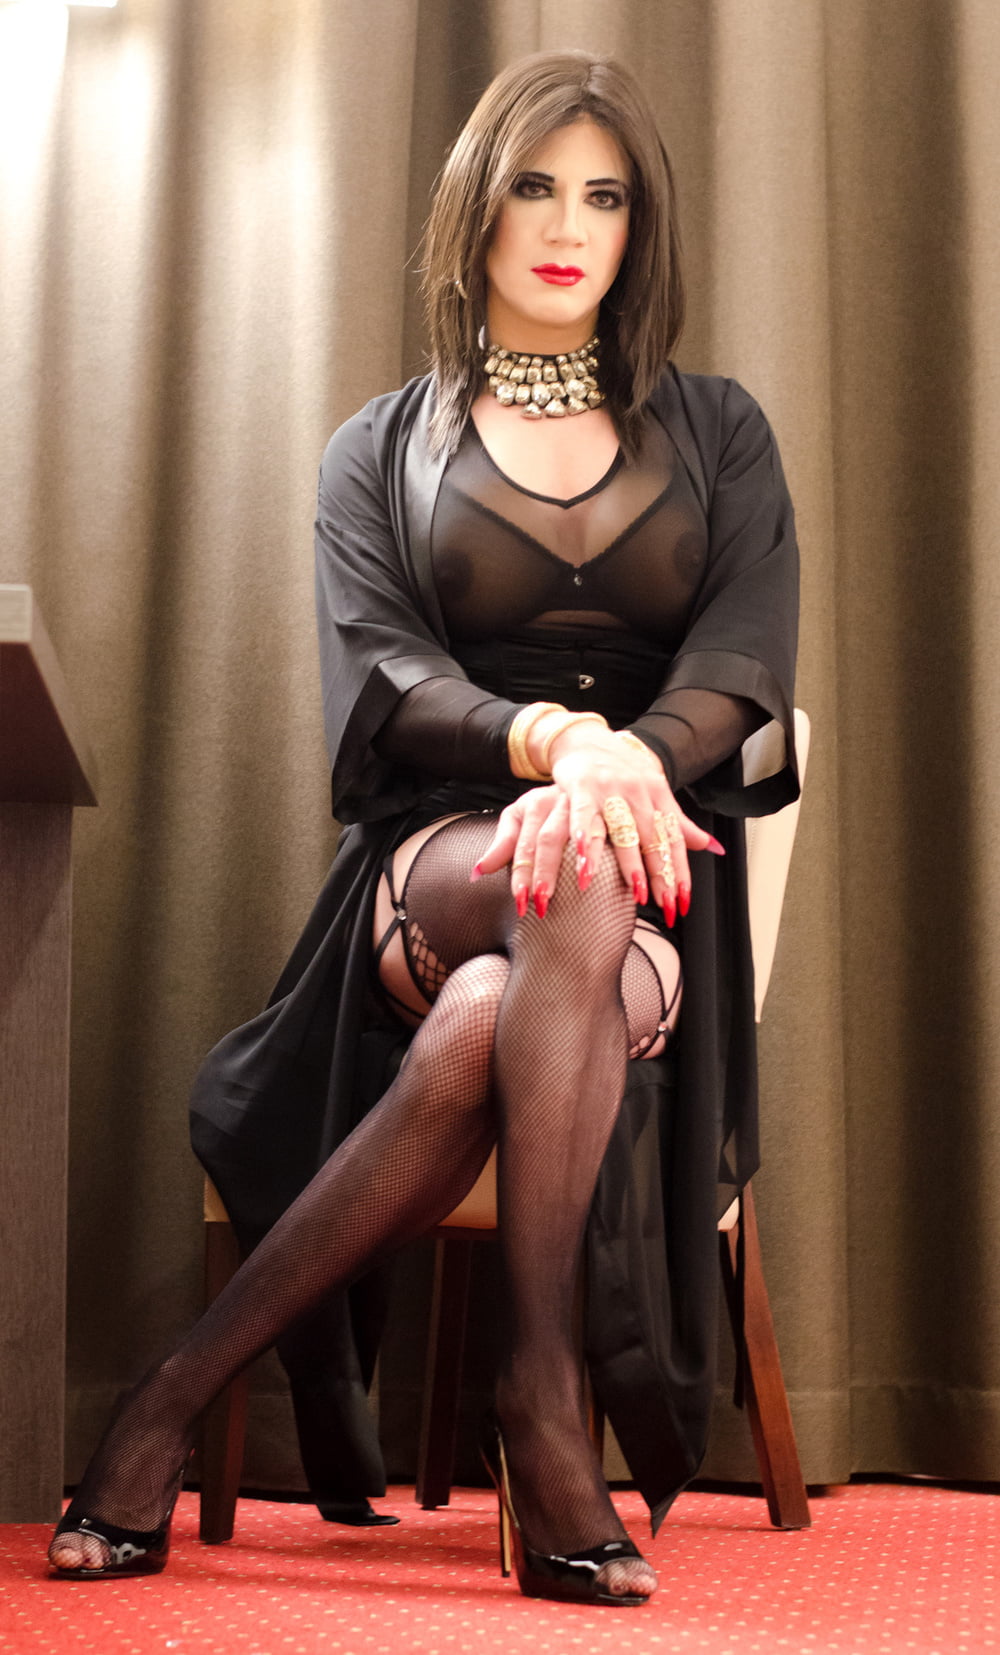 костюм женщины для трансов фото 91